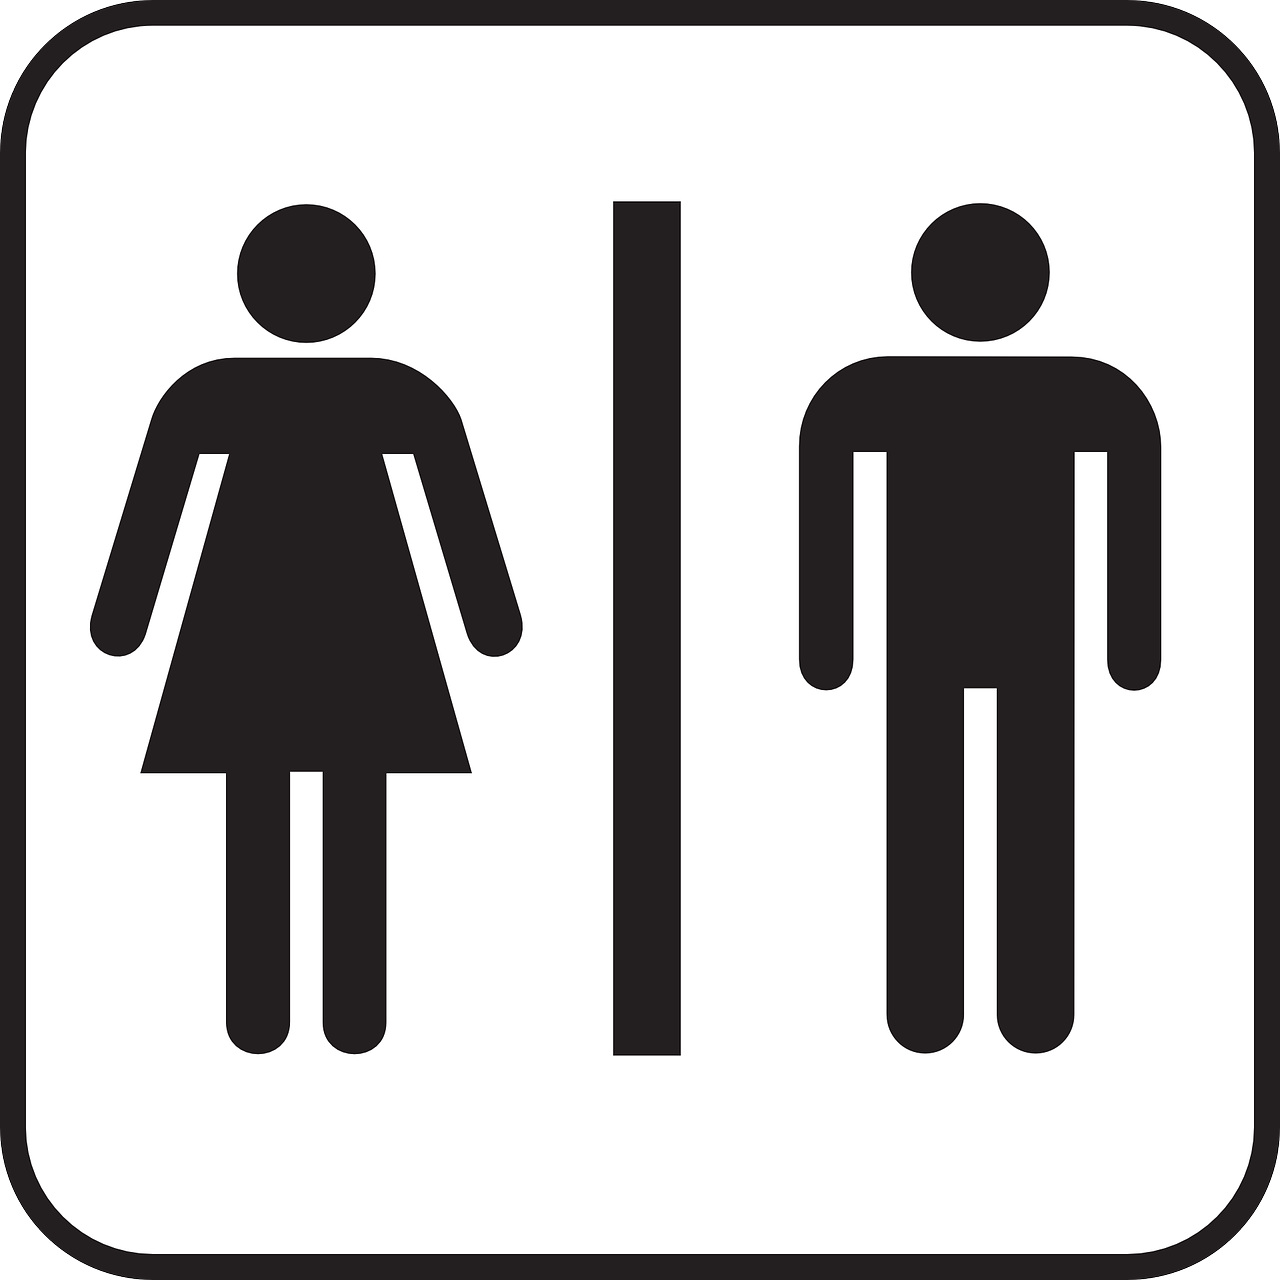 Auf diesem Bild sieht man das Hinweissymbol für öffentliche Toiletten